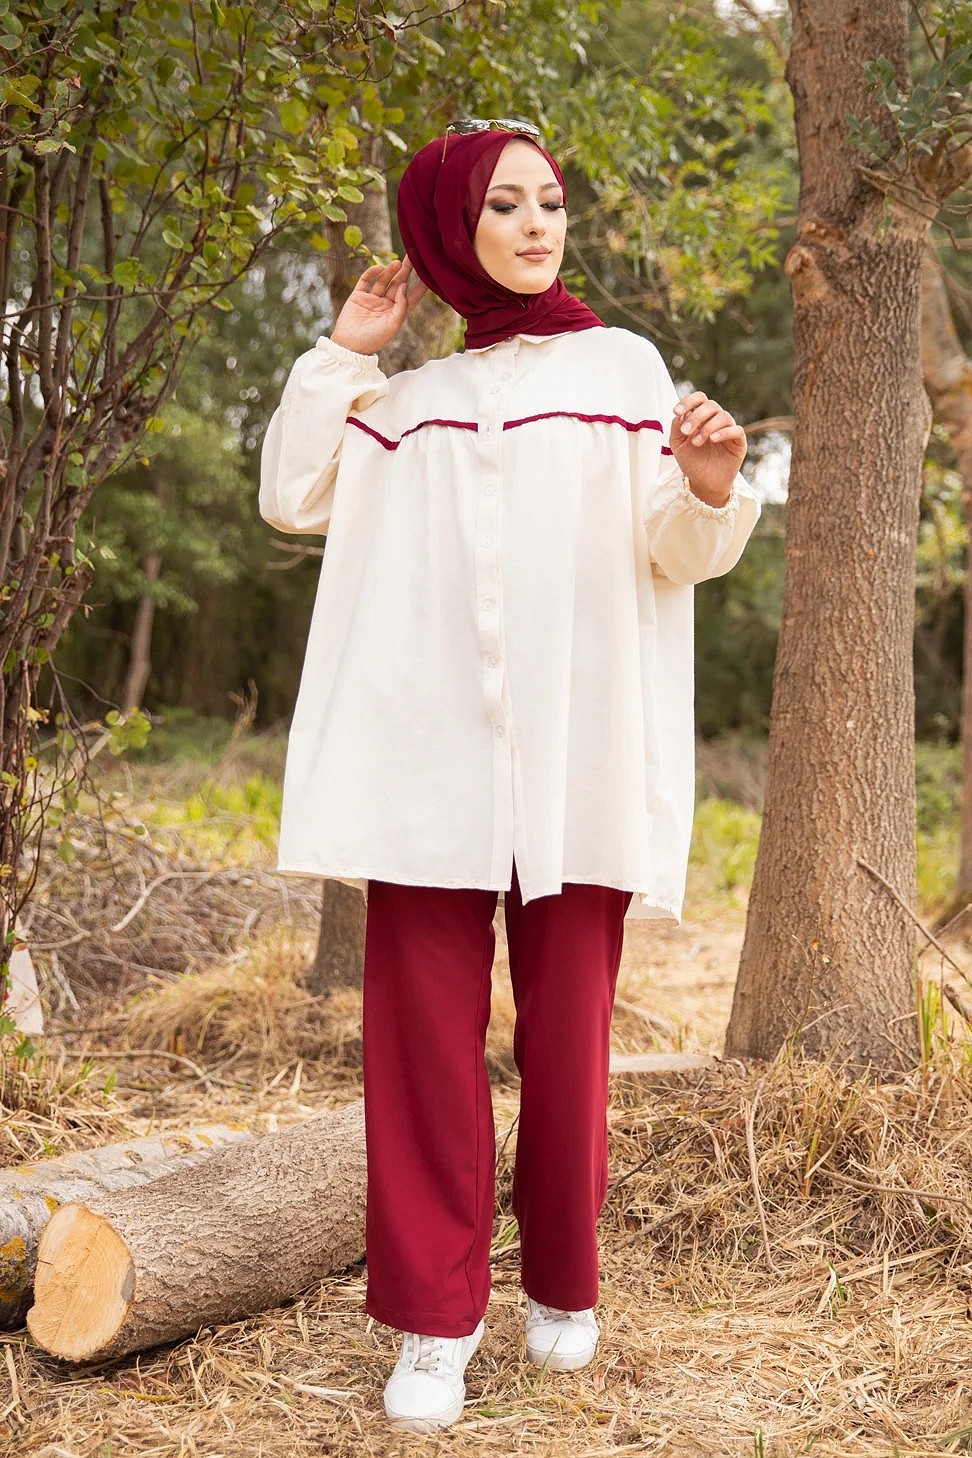 Tunique-Chemise imprimée avec capuche (Vetement femme voilée Turquie) -  Couleur Bordeaux